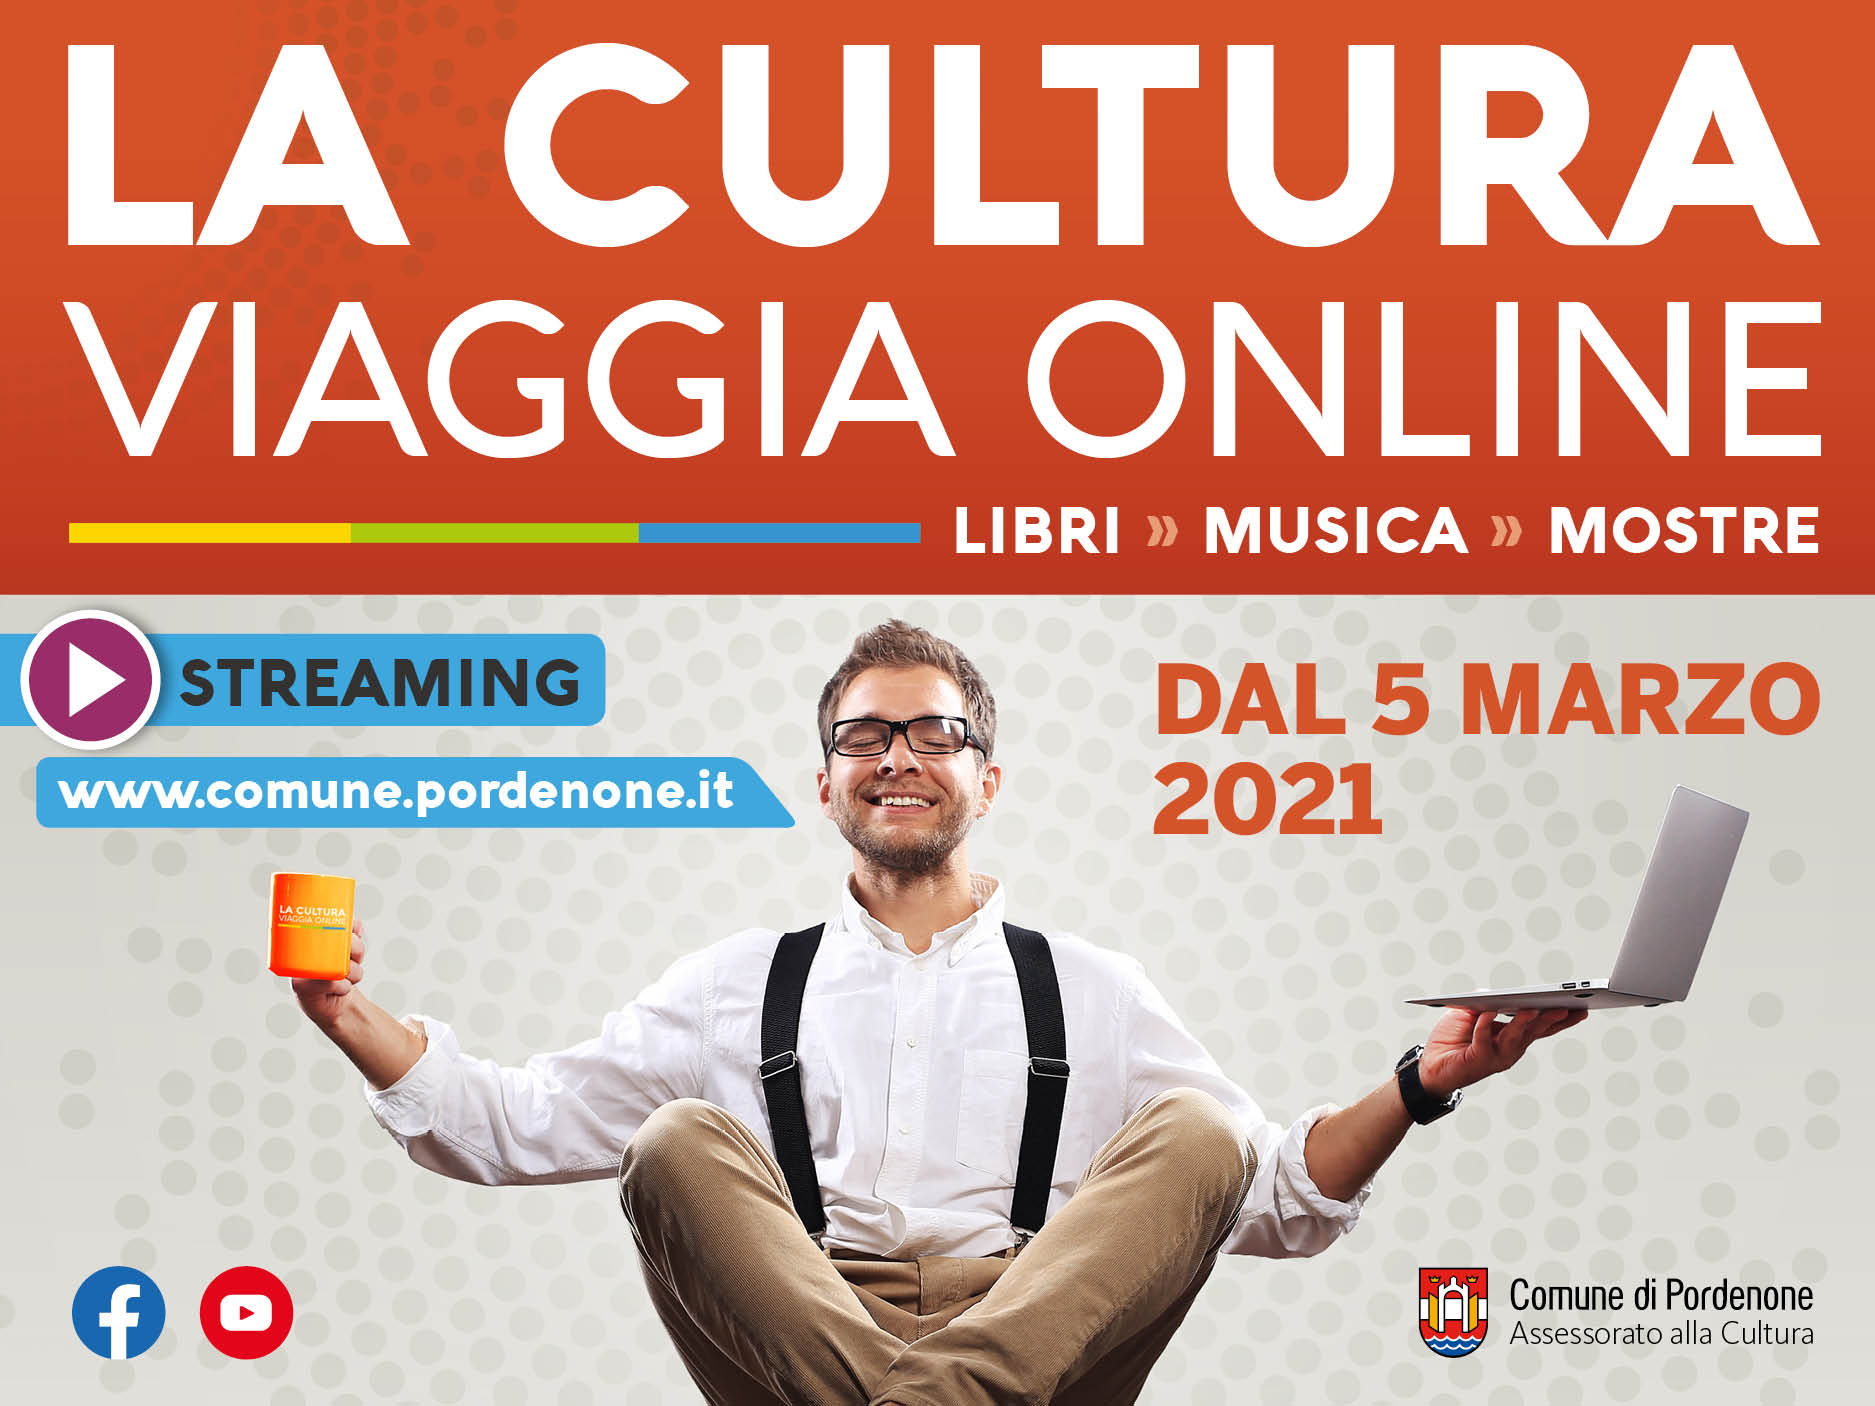 CulturaViaggia-Evento sito web 900x675-2.jpg